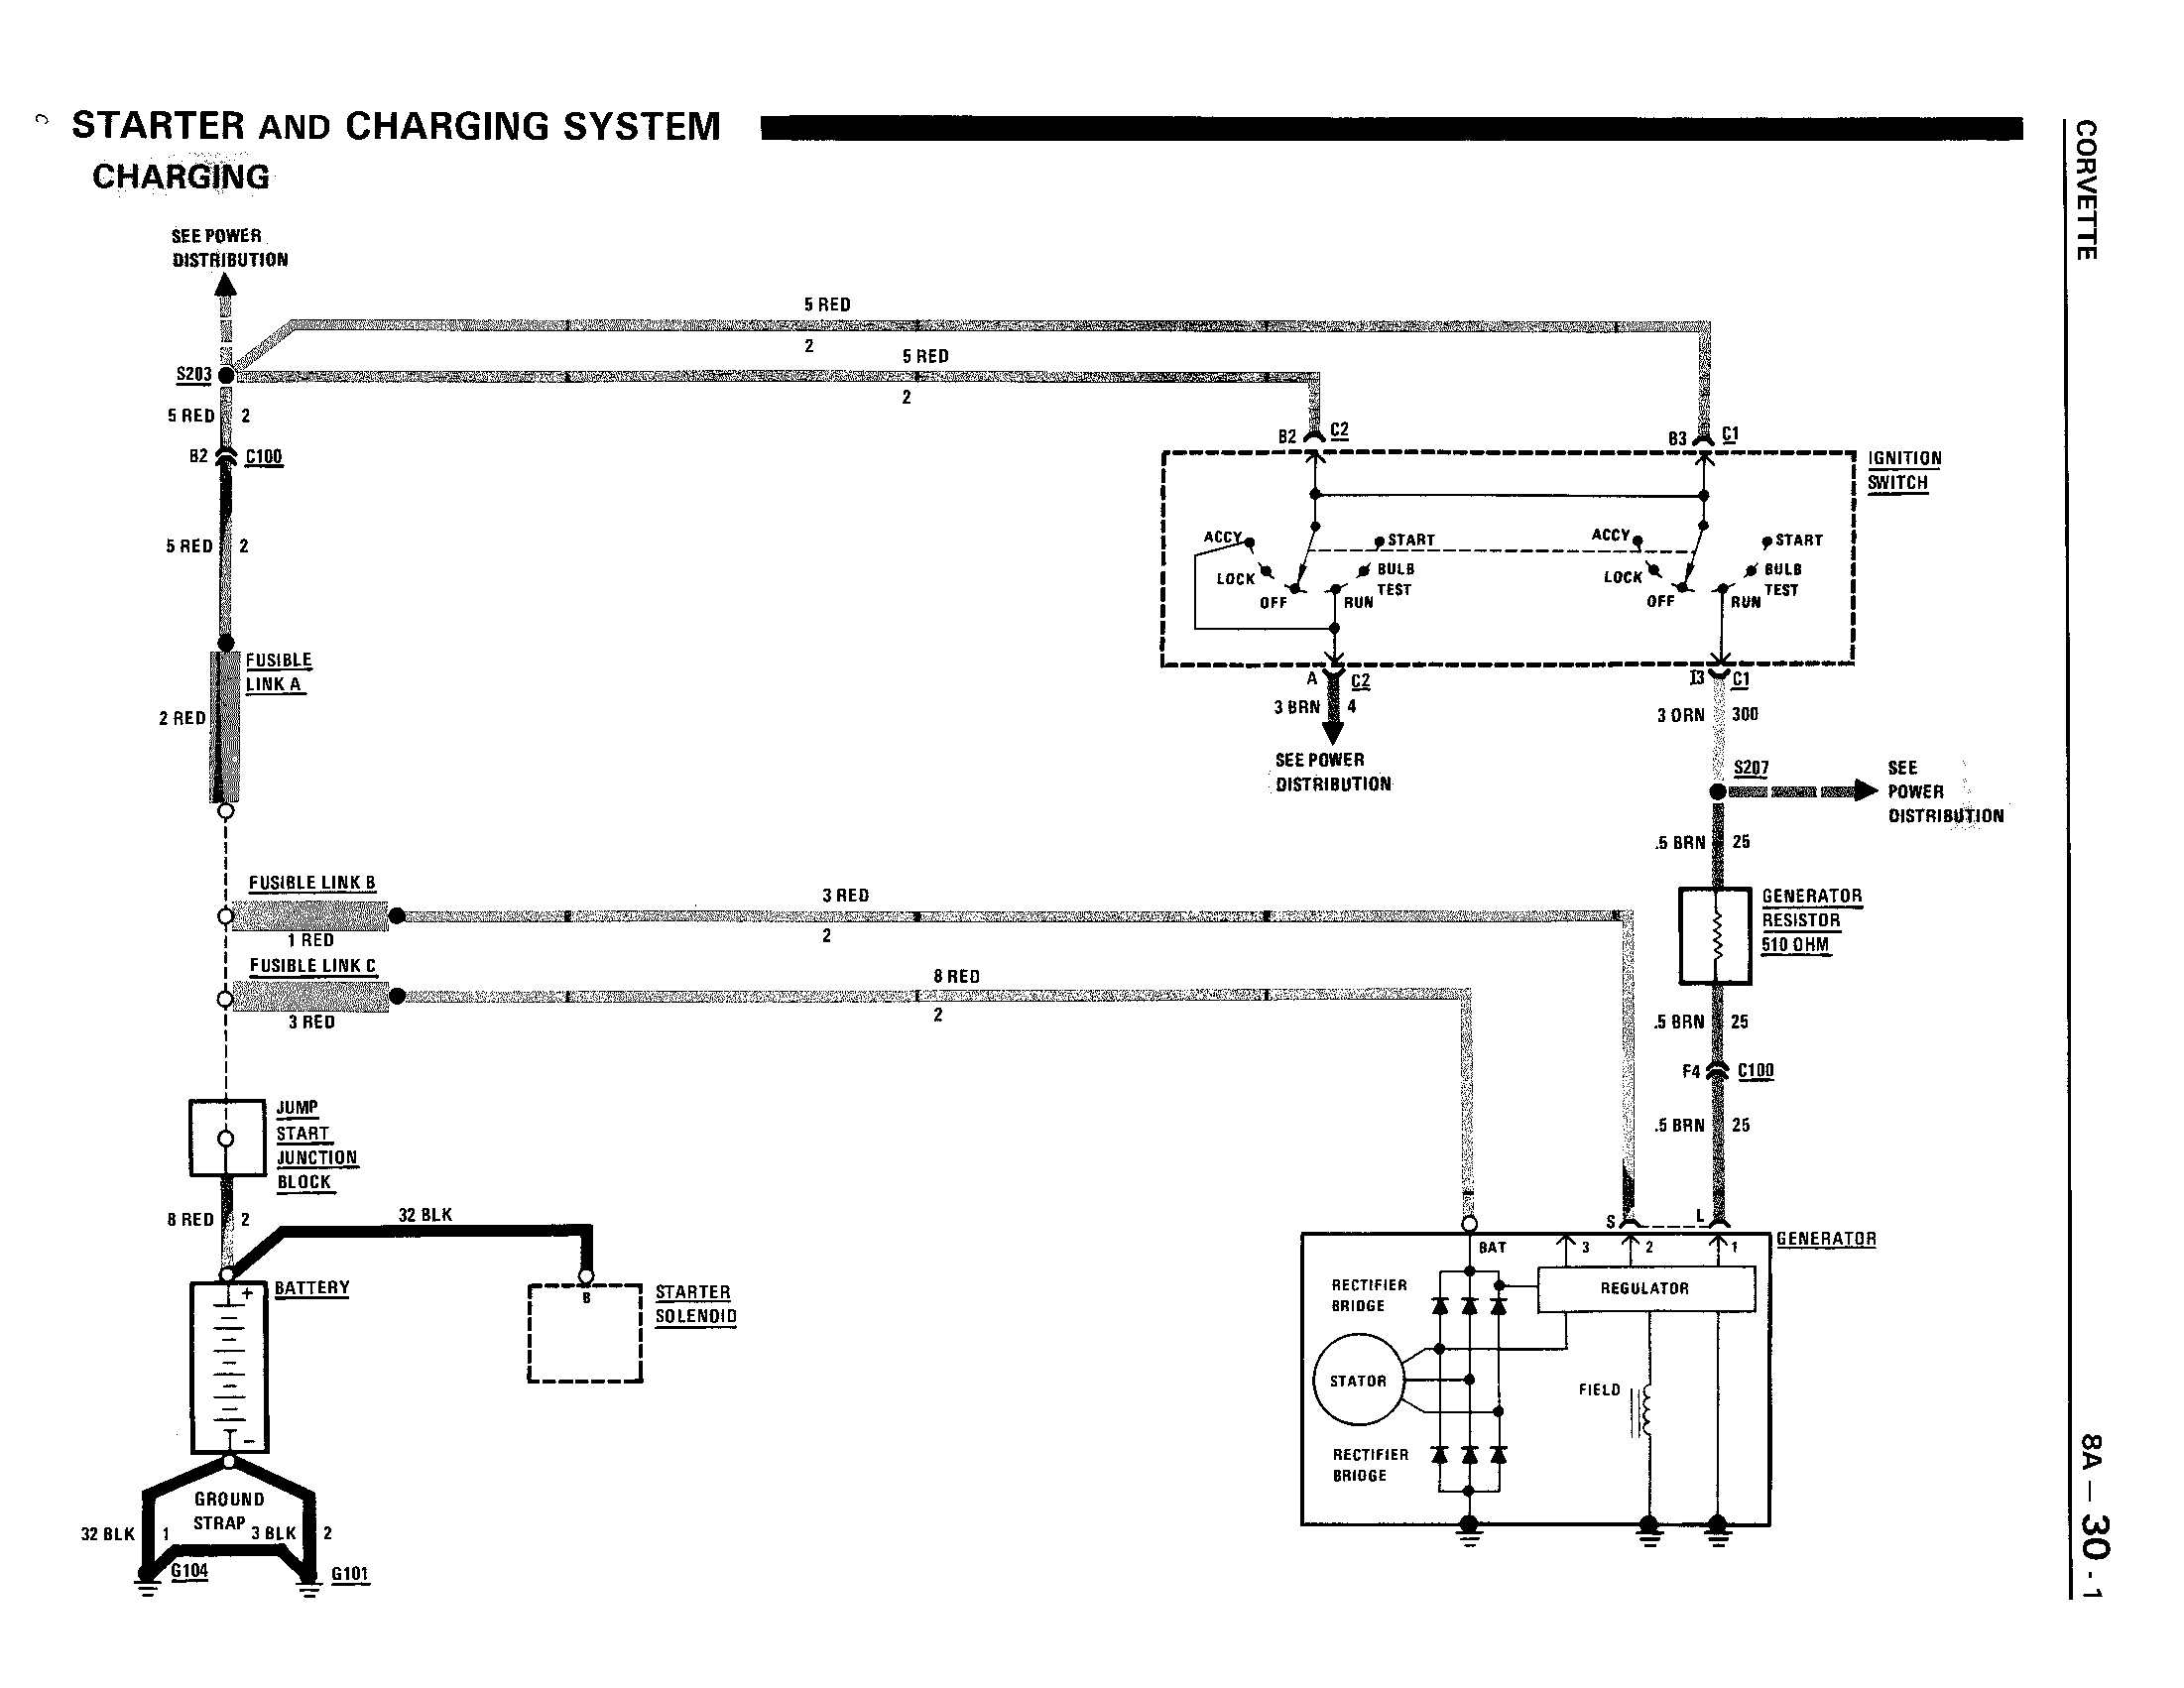 Alternator wiring diagram - CorvetteForum - Chevrolet Corvette Forum  Discussion  1982 Corvette Alternator Wiring Diagram    Corvette Forum